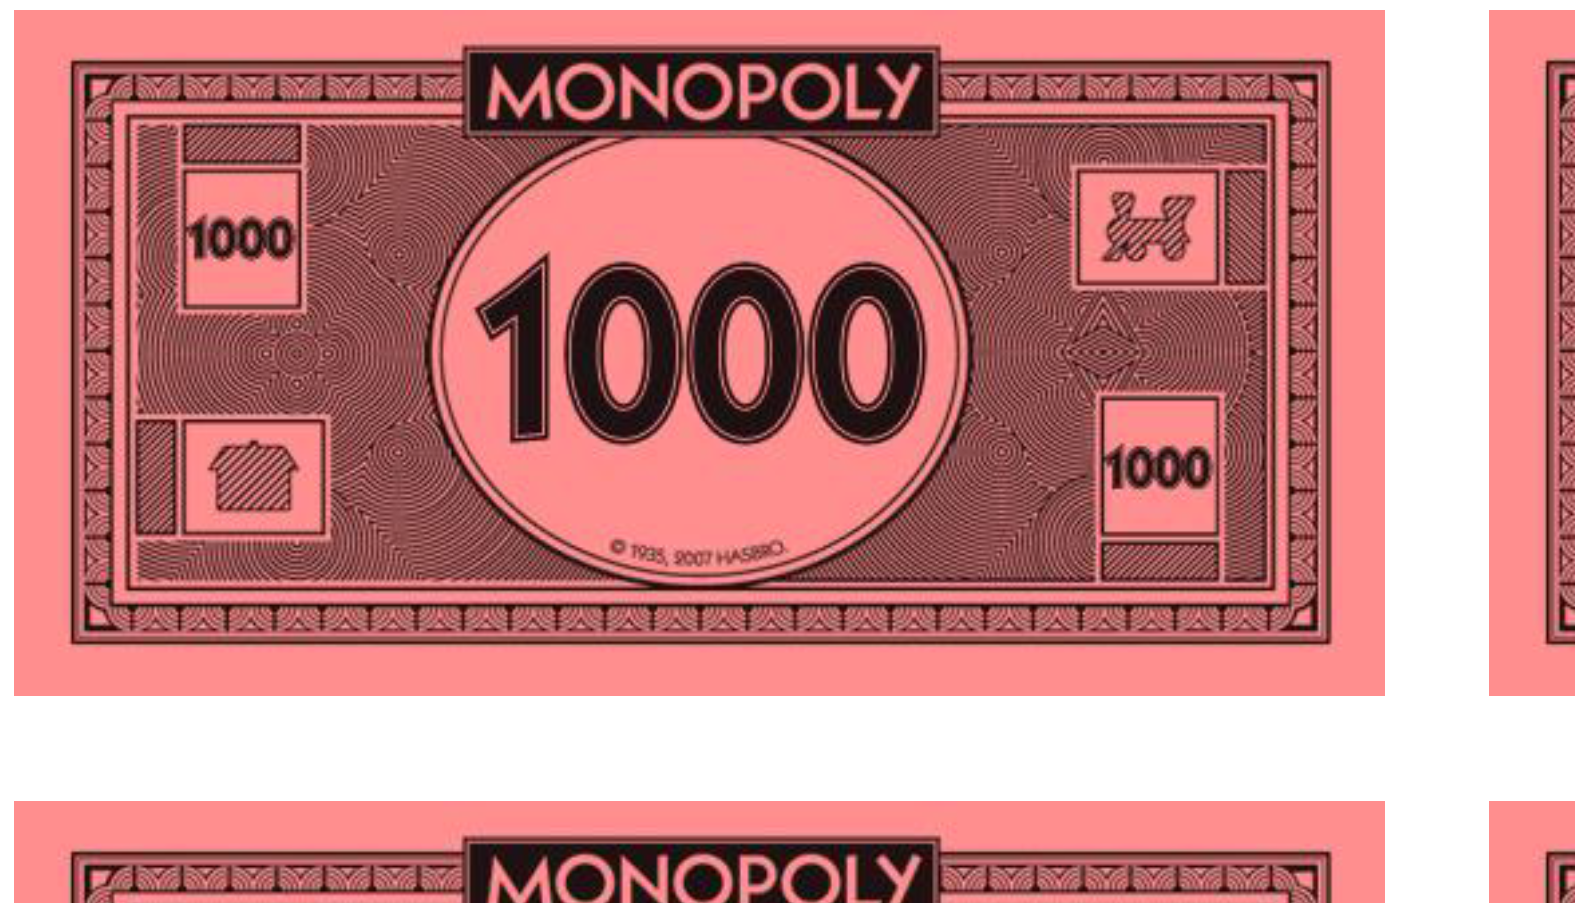 100 monopoly money